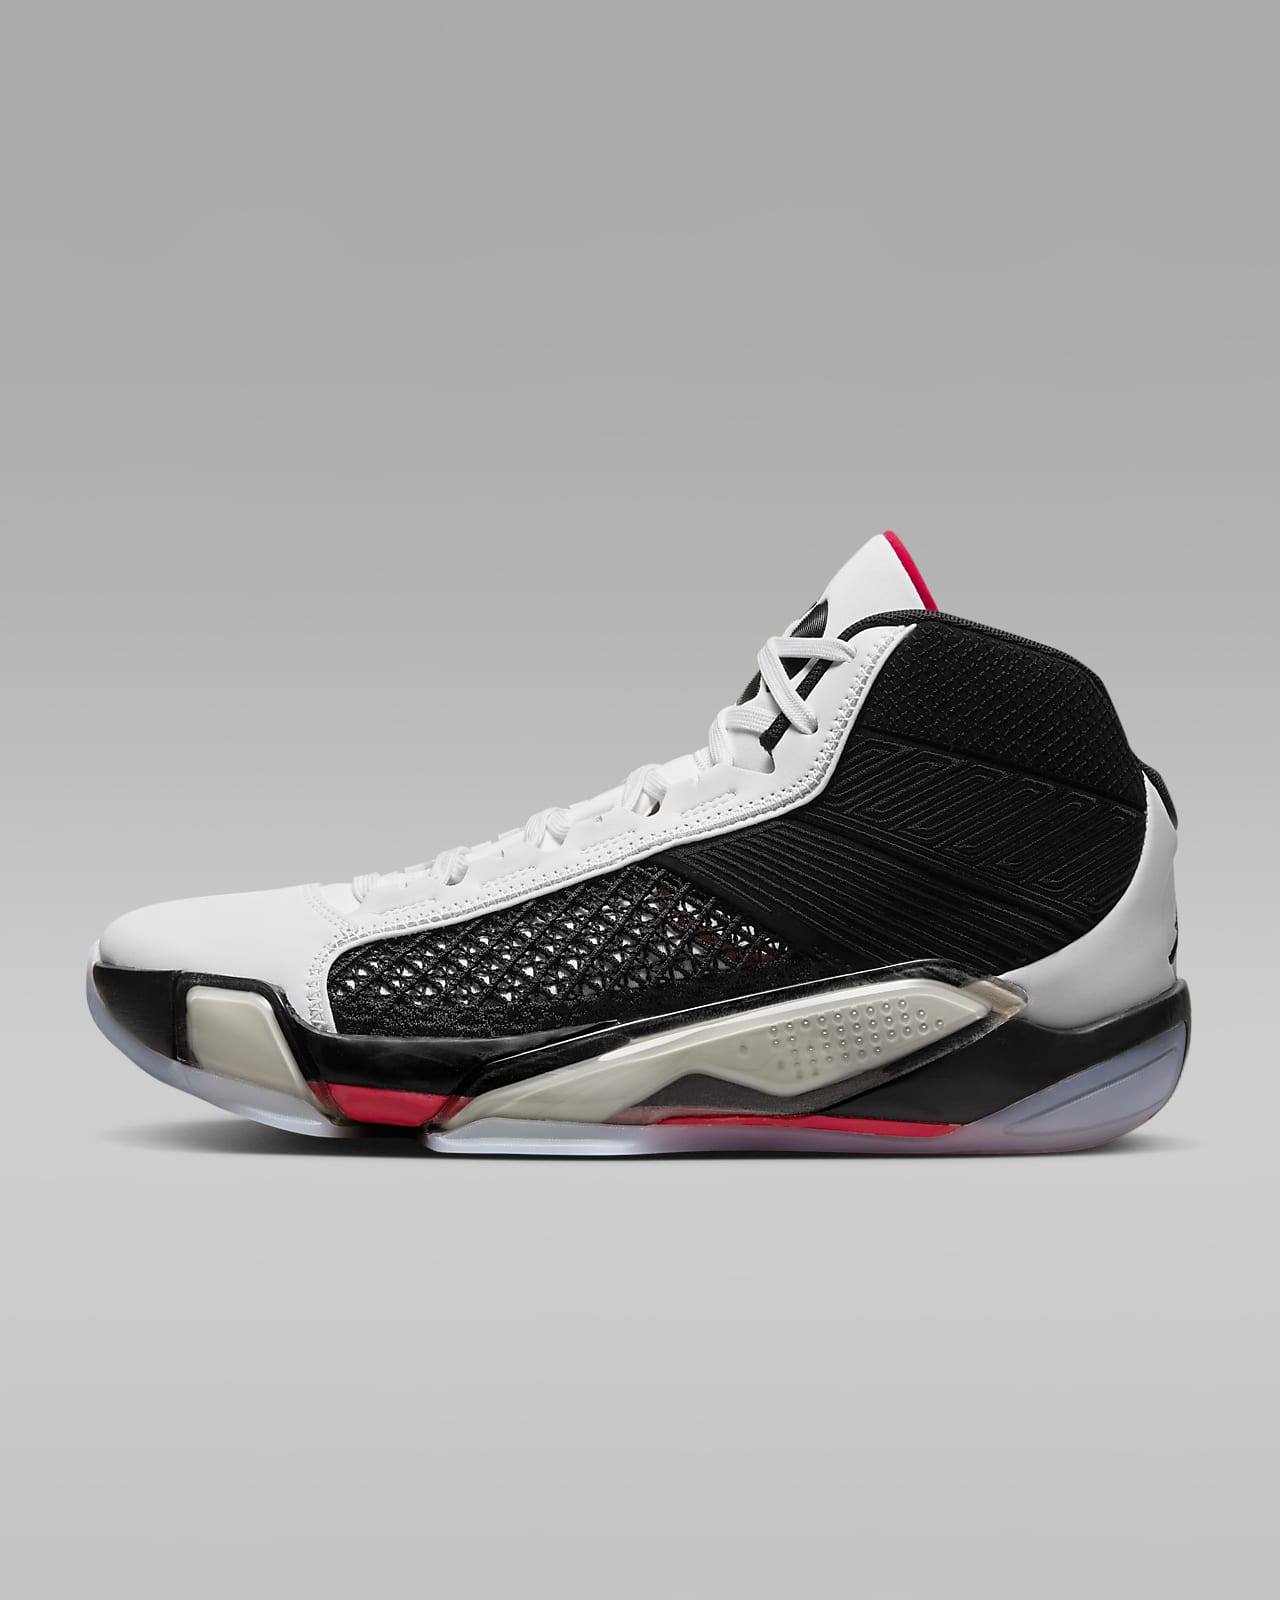 Air Jordan XXXVIII "Fundamental" Basketball Shoes